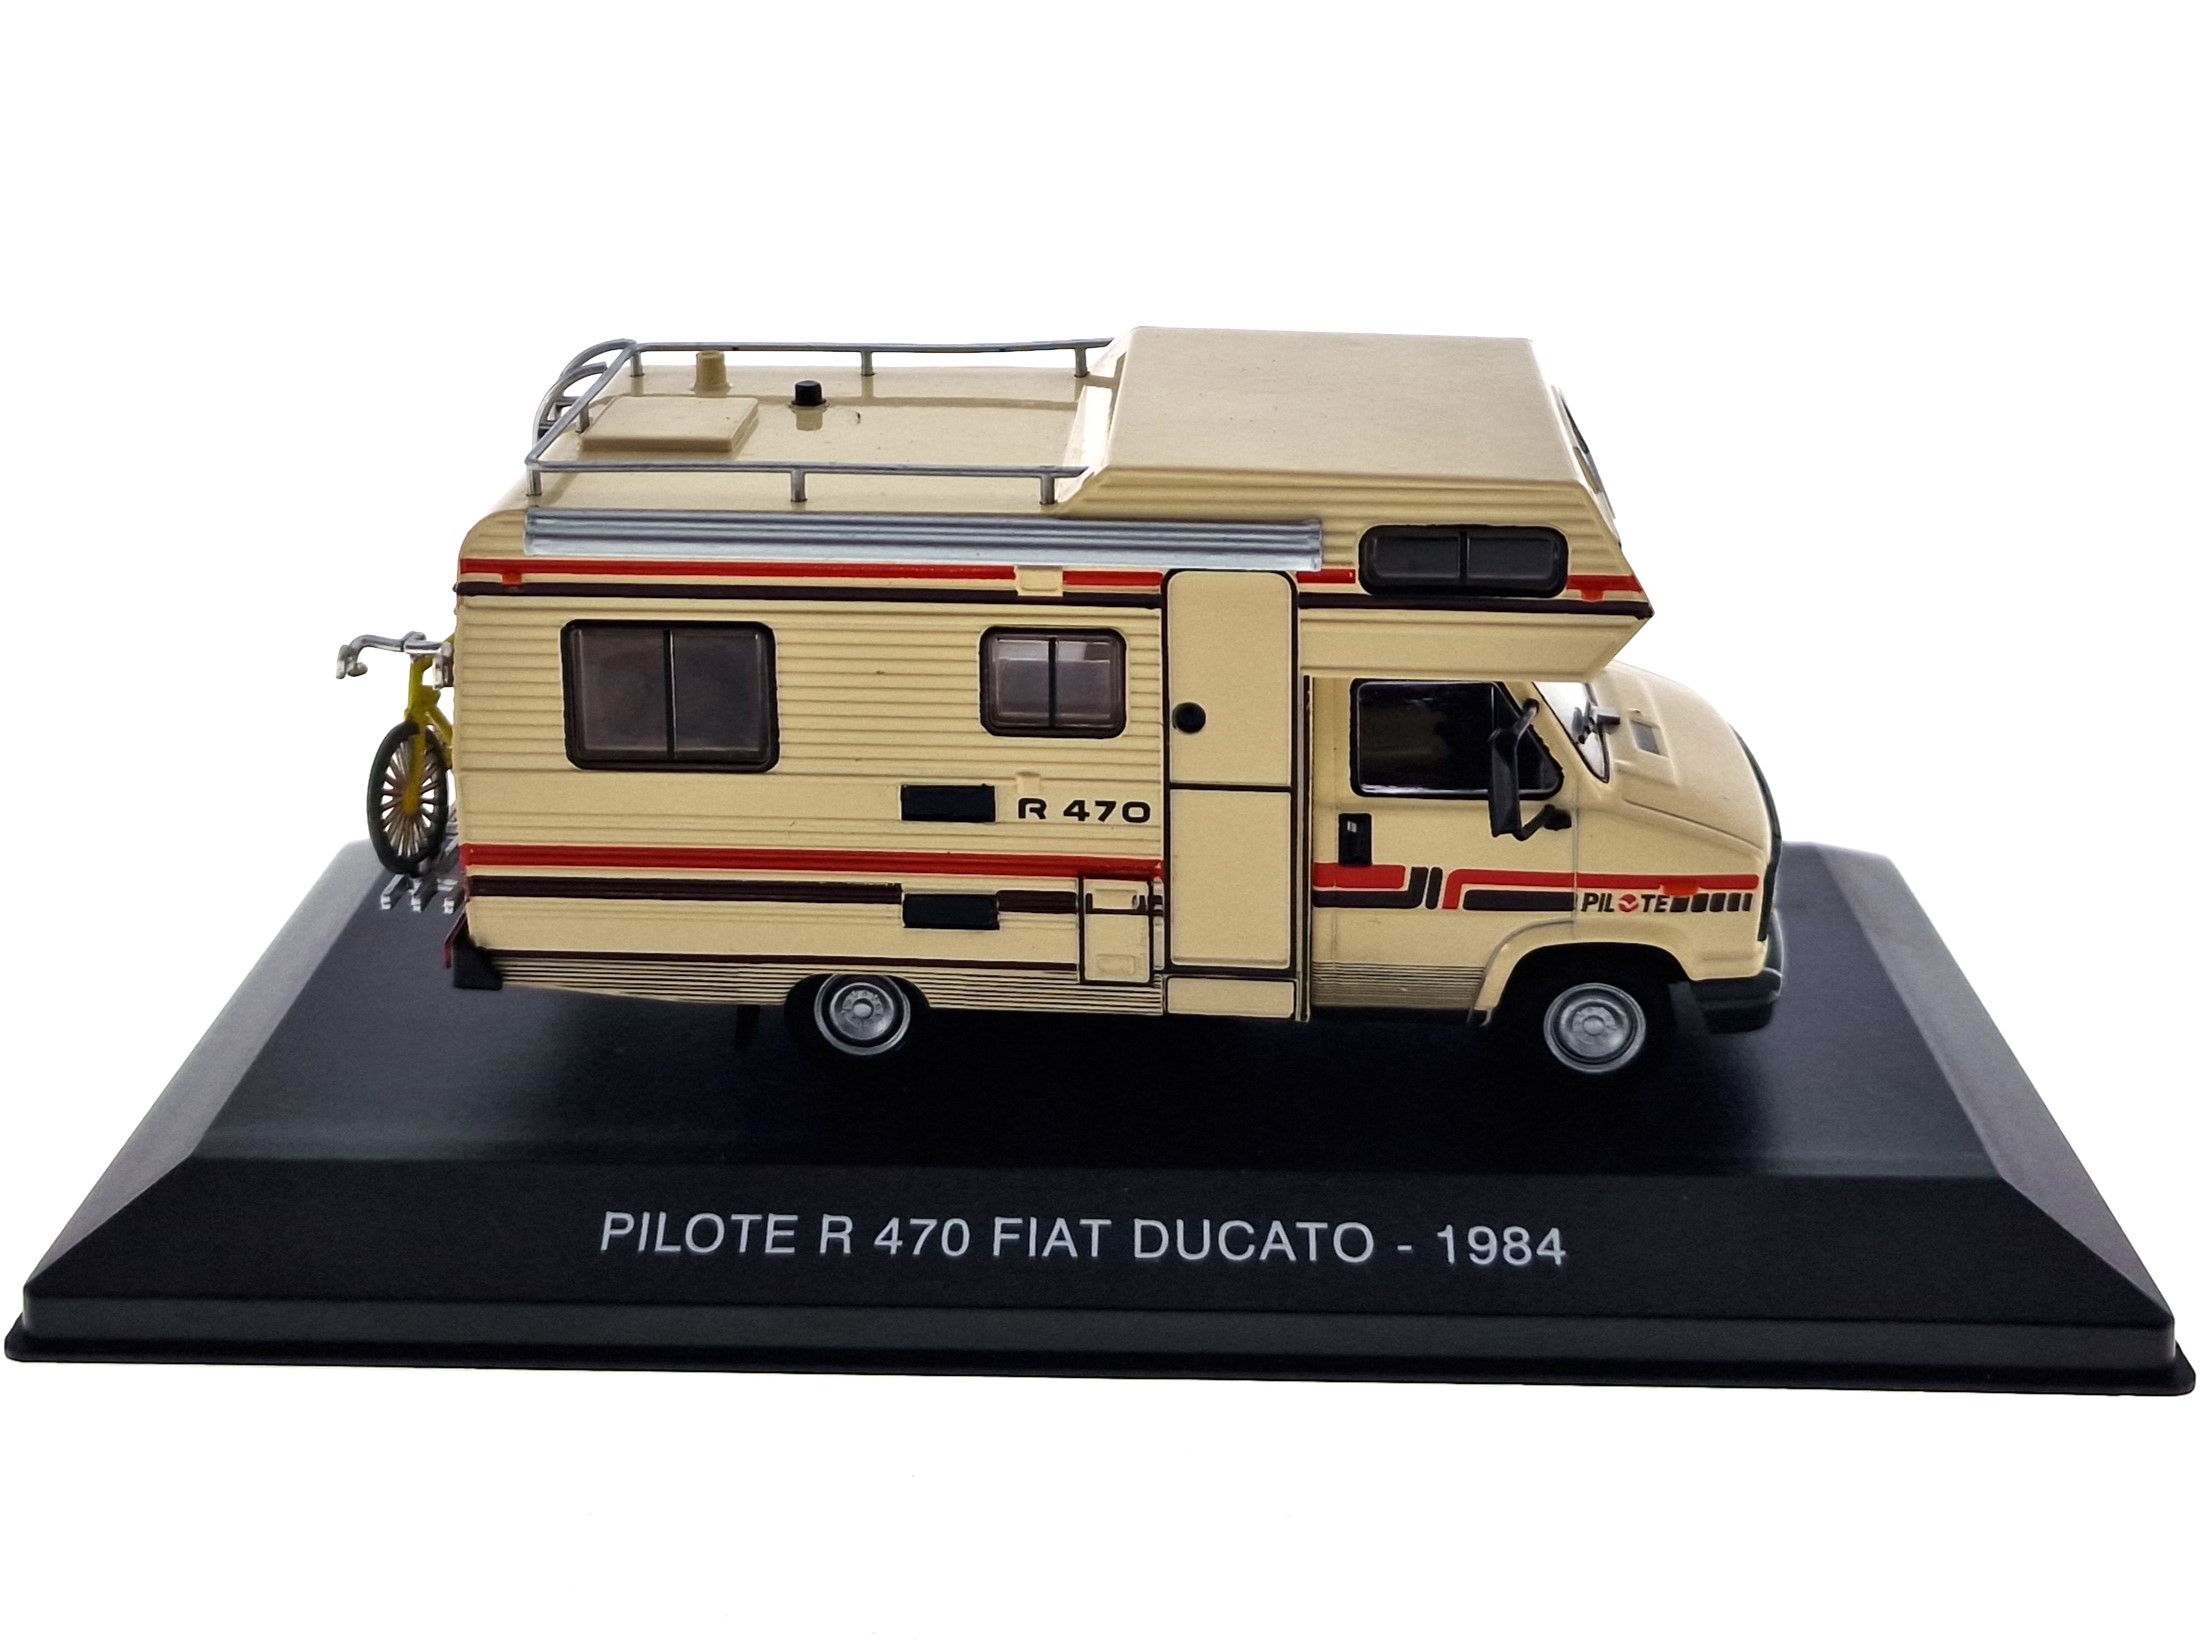 PILOTE R 470 FIAT DUCATO - 1984